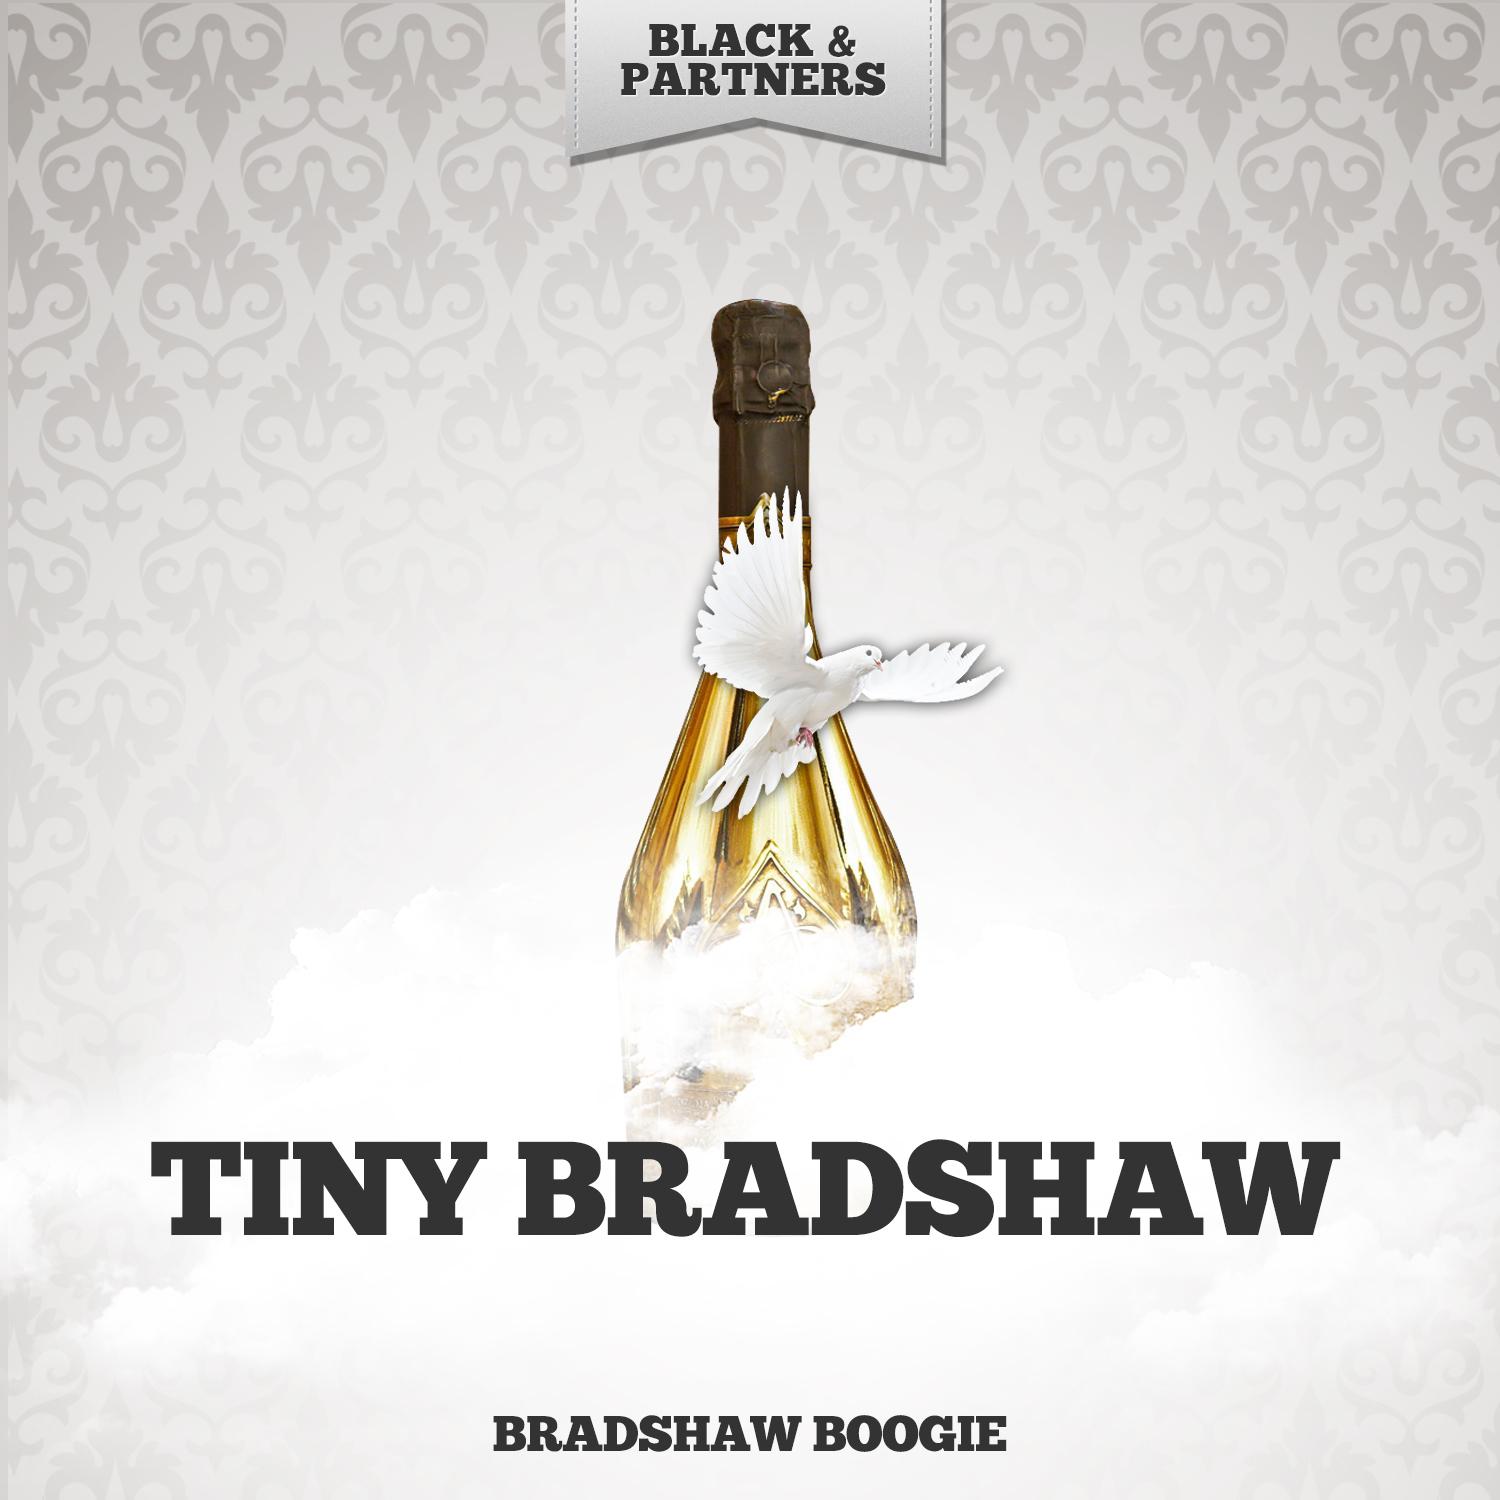 Bradshaw Boogie